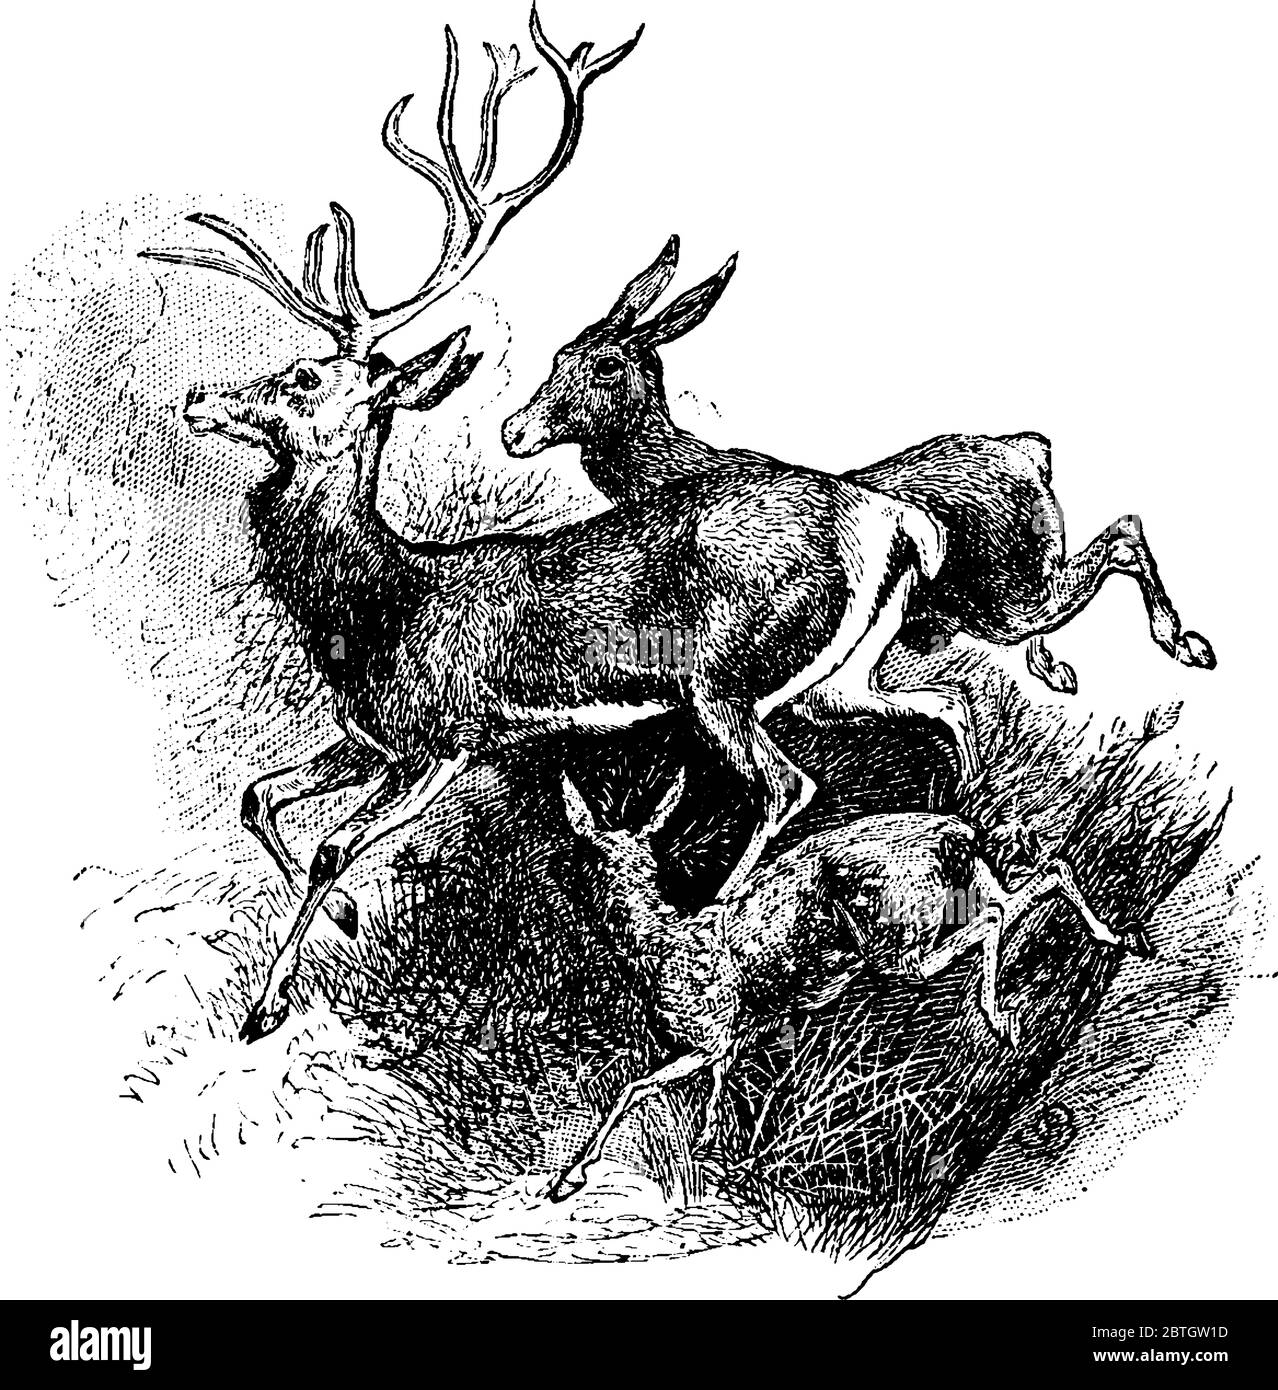 Il cervo rosso è il più grande in specie di cervo che ha corna ramificate grandi, disegno di linea di annata o illustrazione di incisione. Illustrazione Vettoriale